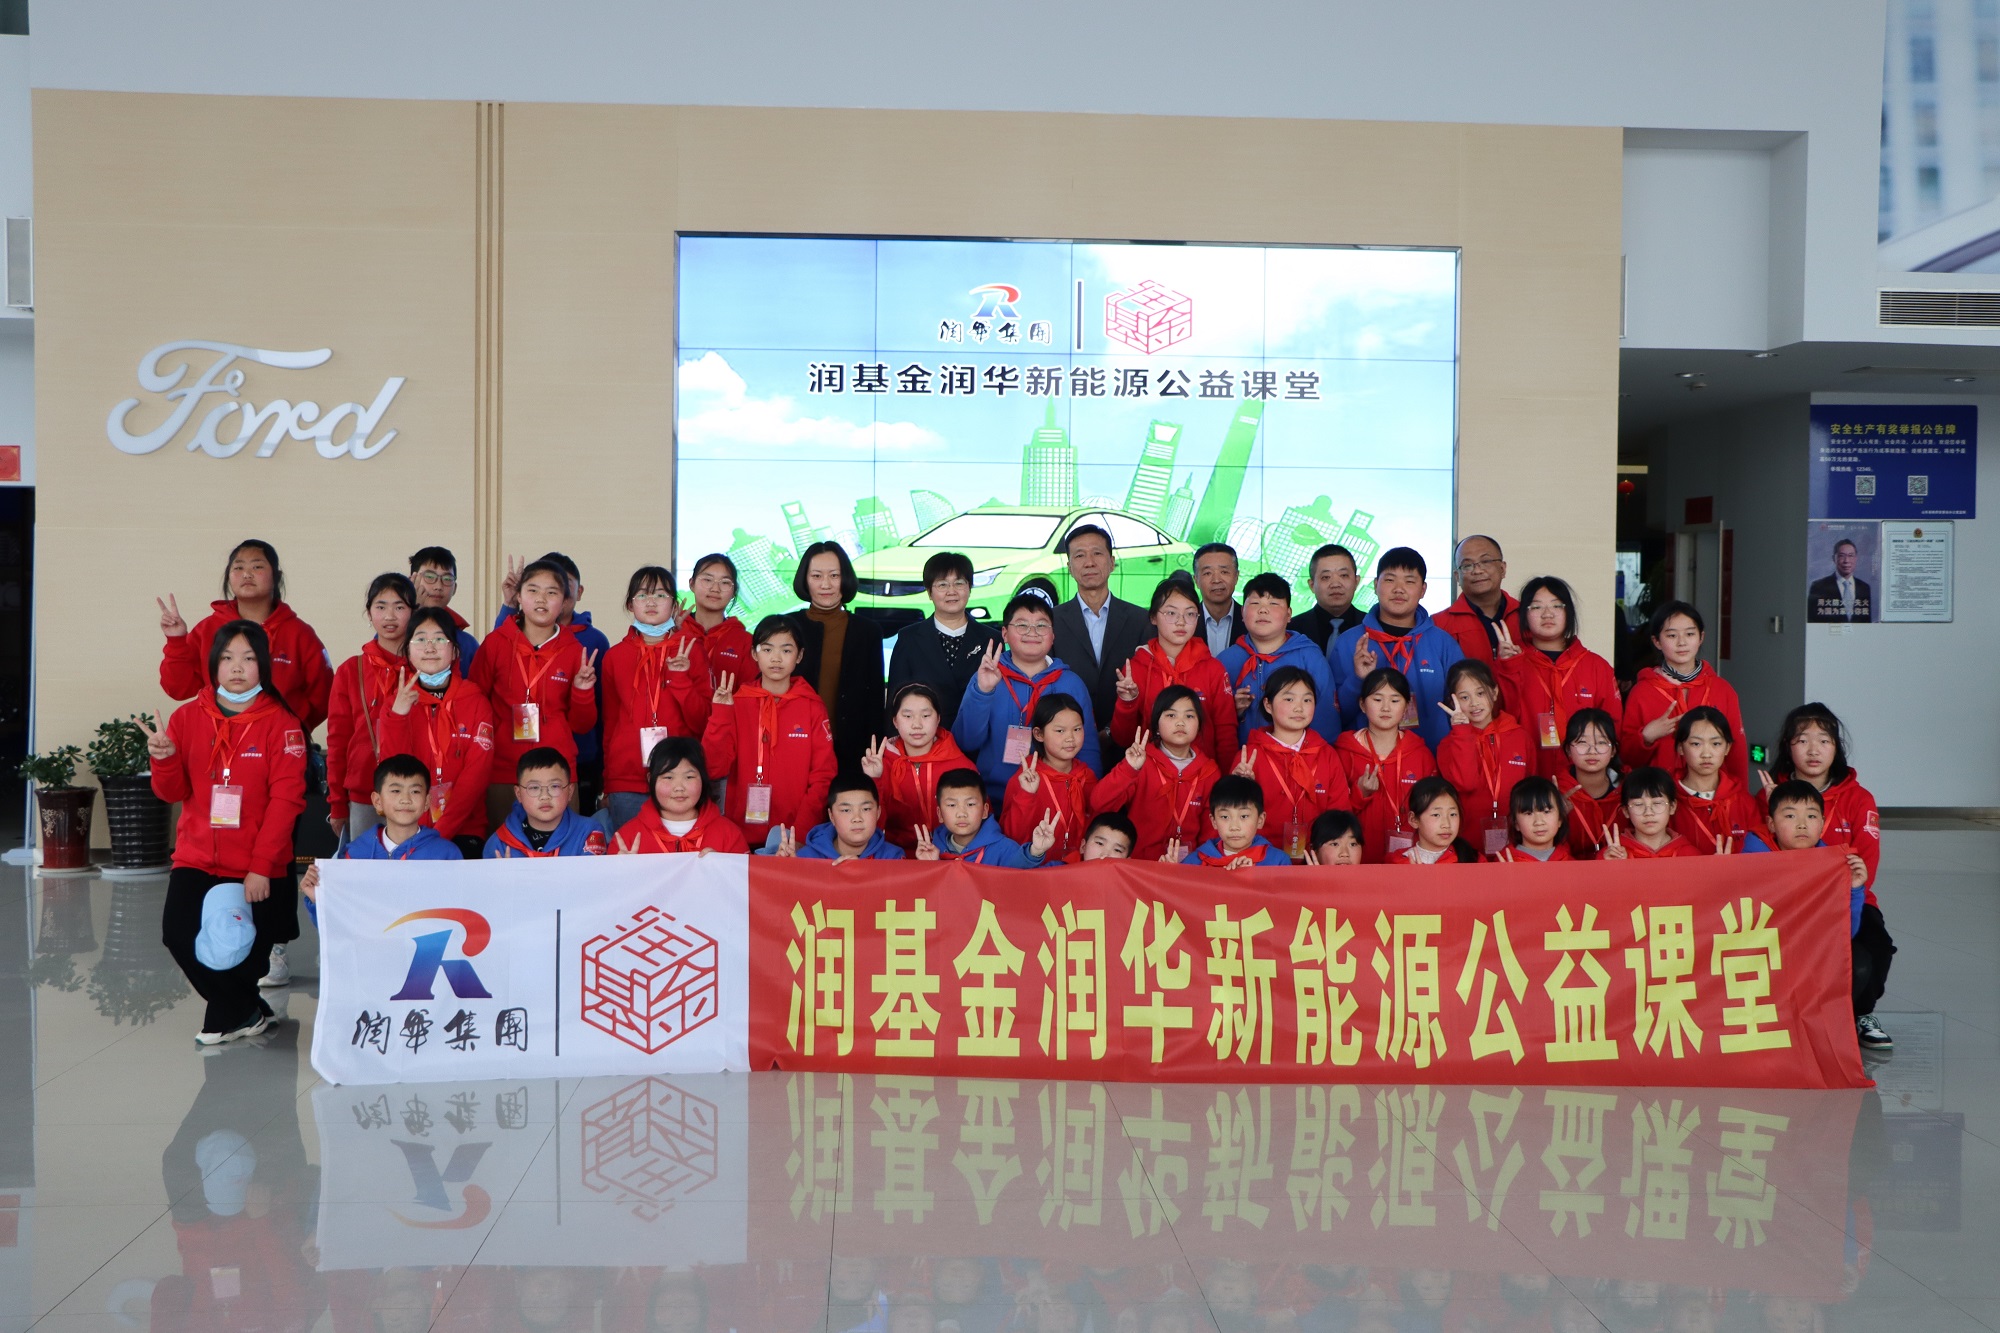 “润基金”w88win志愿效劳队荣获济南市志愿效劳优秀团队及个人表扬